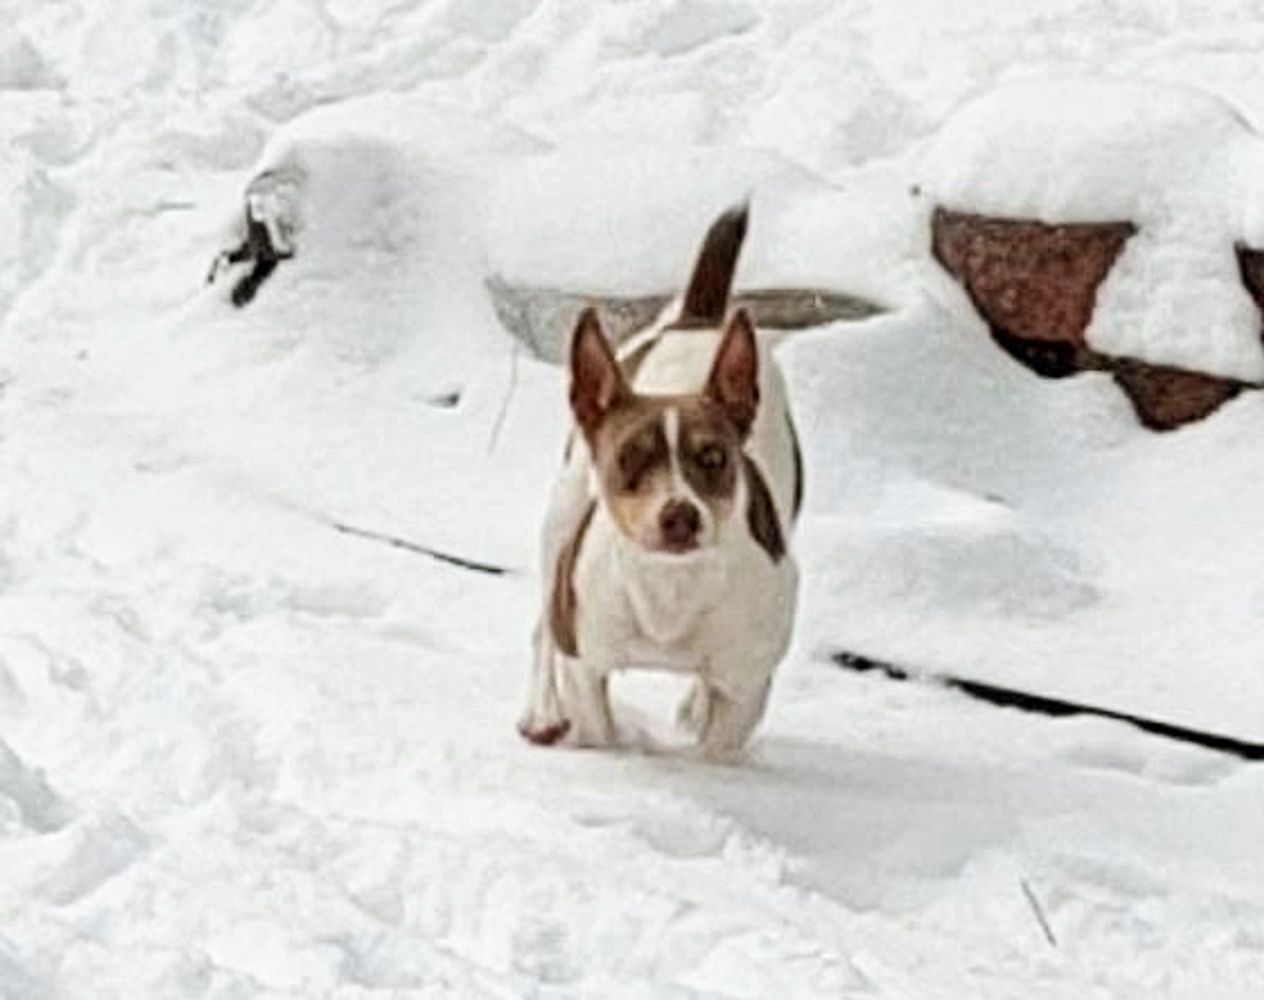 Rat Terrier running in the snow.